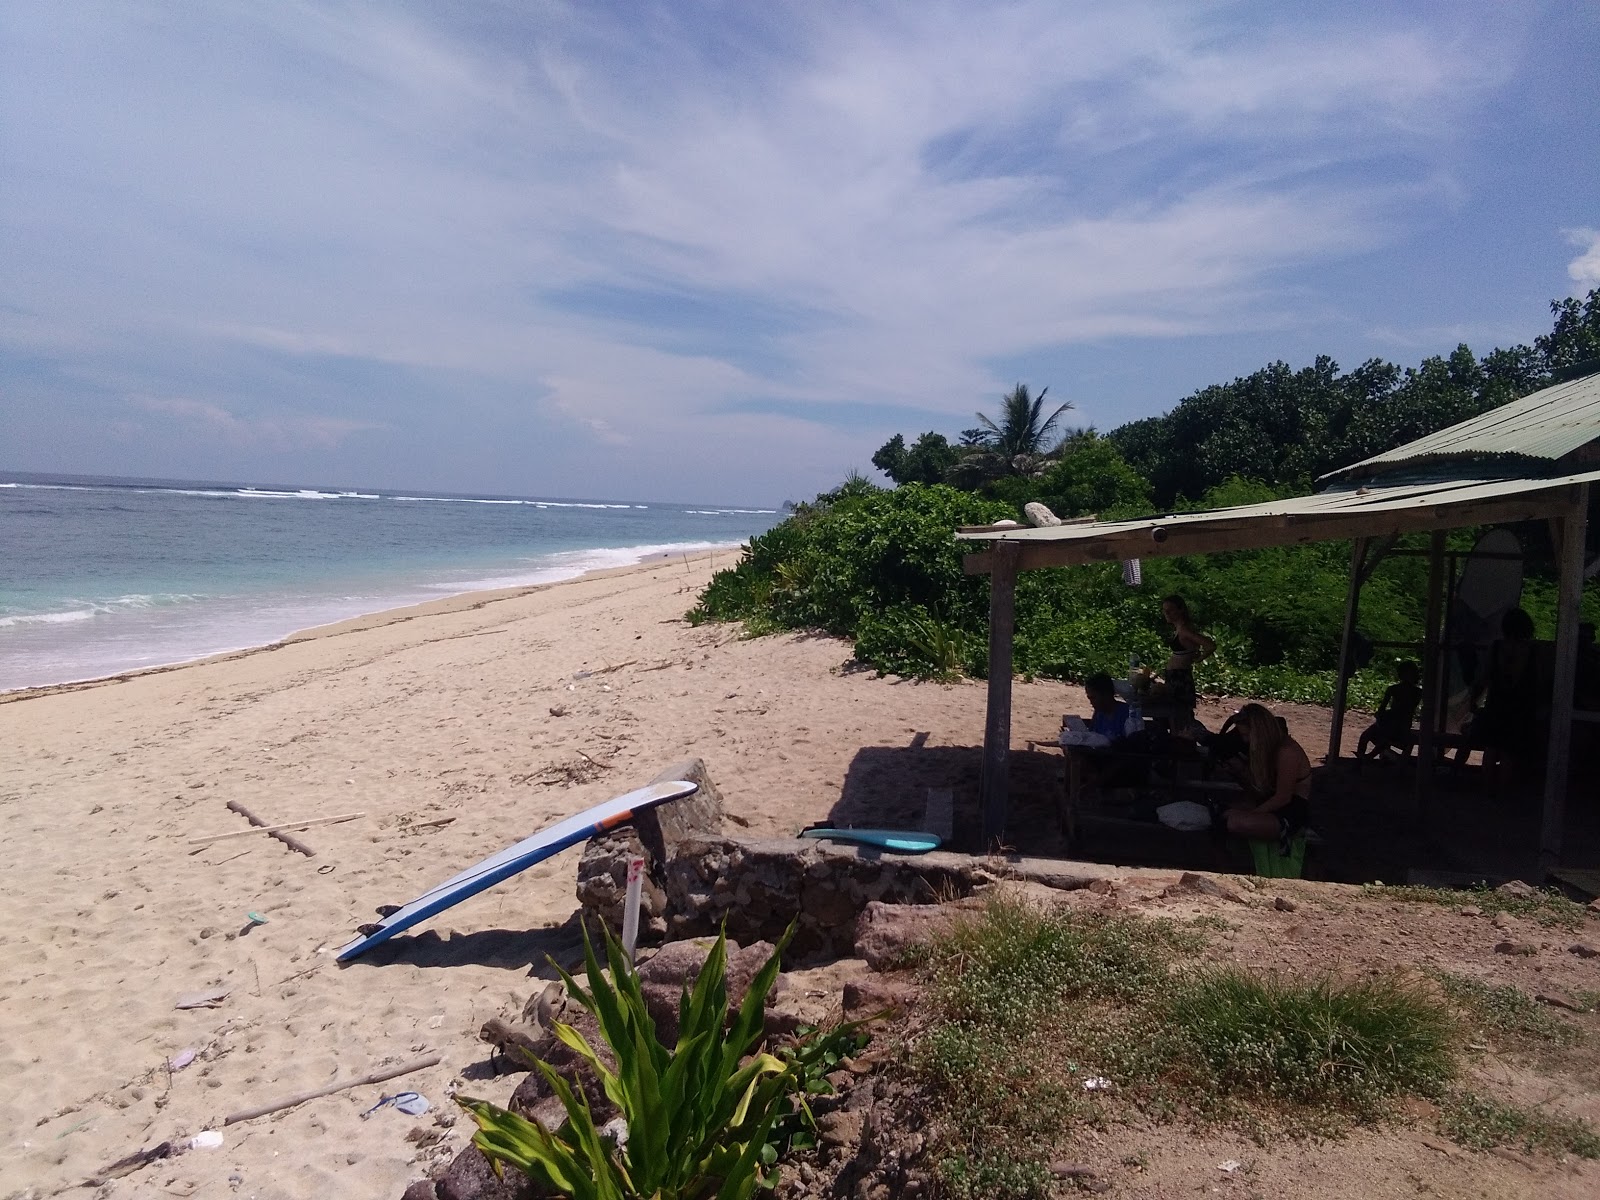 Foto de Serangan Beach con parcialmente limpio nivel de limpieza